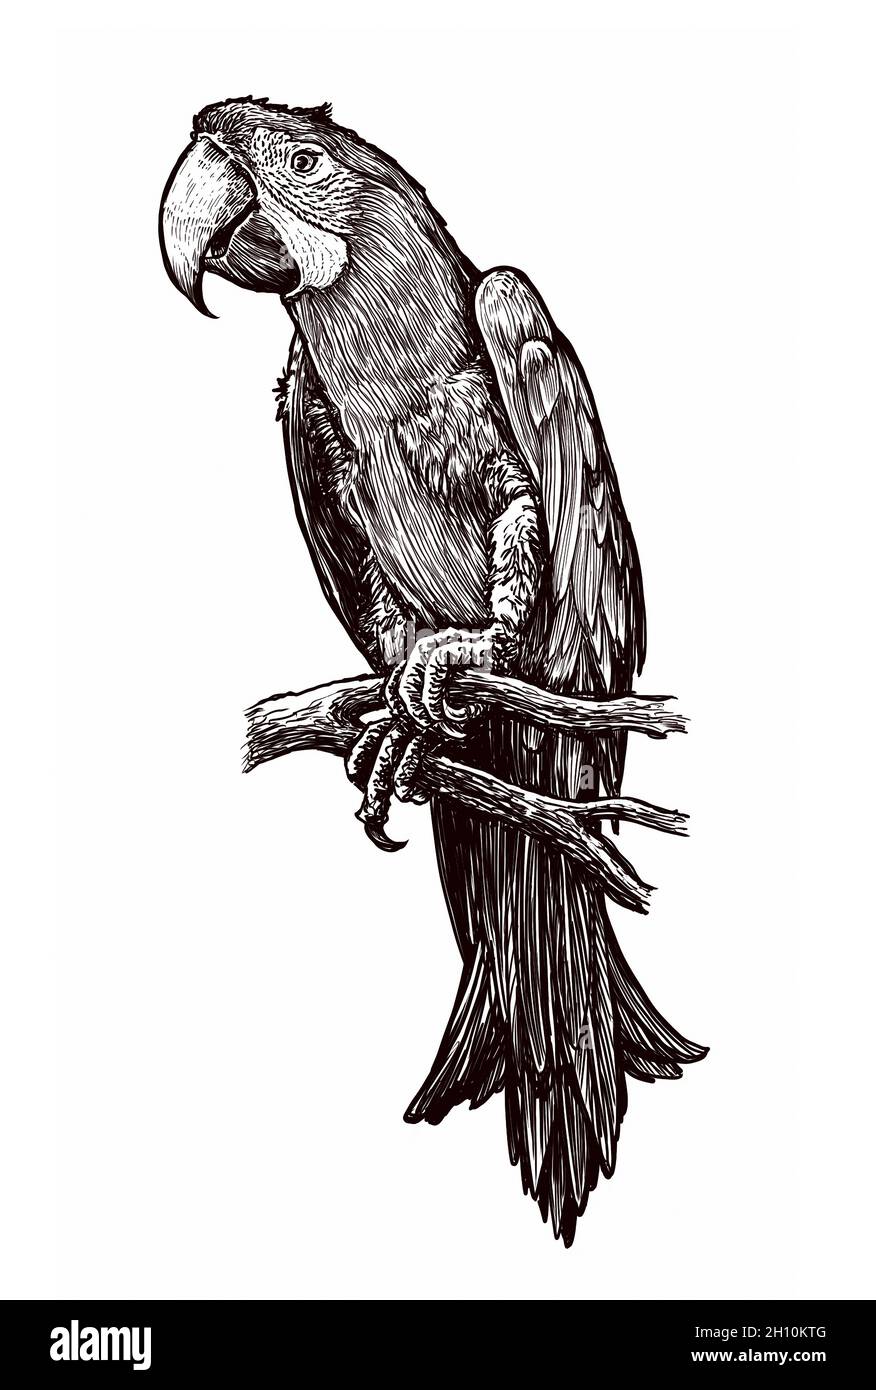 Handgezeichnete Abbildung des Papagei. Skizze des Vogels isoliert auf weißem Hintergrund Stockfoto